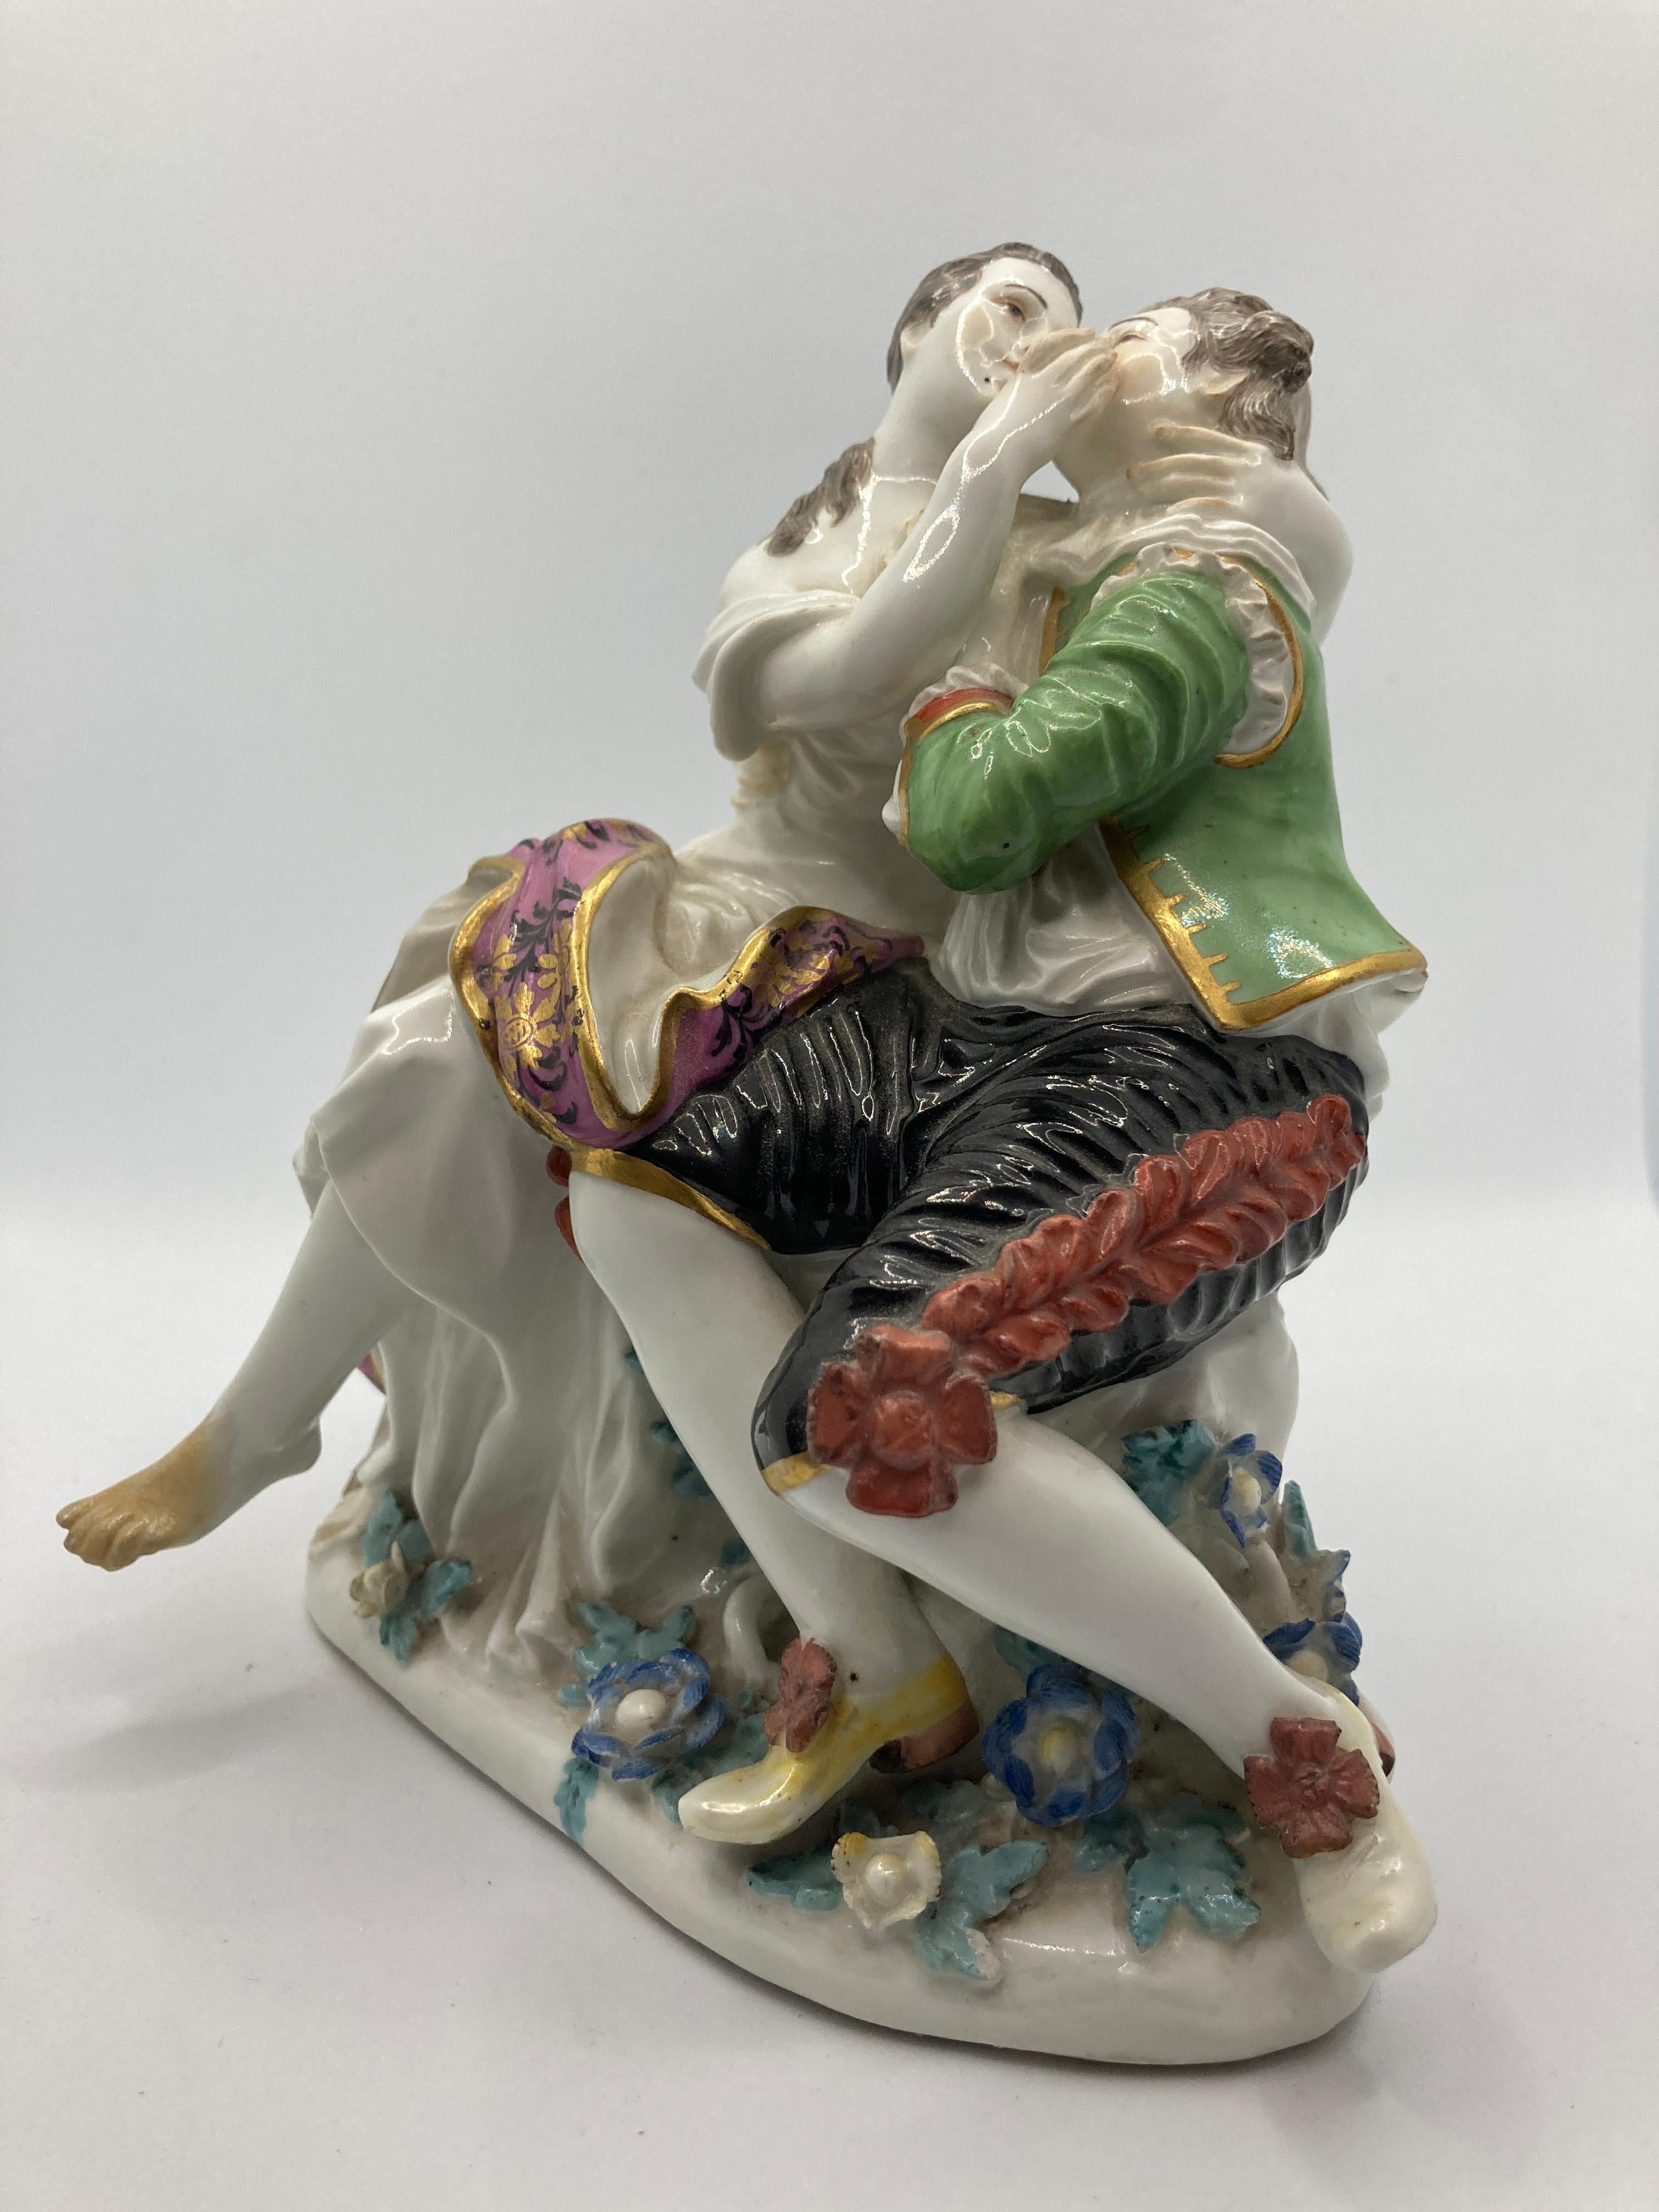 Meissener Porzellanfiguren des 18. Jahrhunderts, Liebespaar. Modell 571. 

Sitzendes Liebespaar, Entwurf von Johann Joachim Kaendler, über einem mit plastischen Blumen und Blättern bedeckten Sockel, auf einem Baumstumpf sitzendes, sich küssendes und